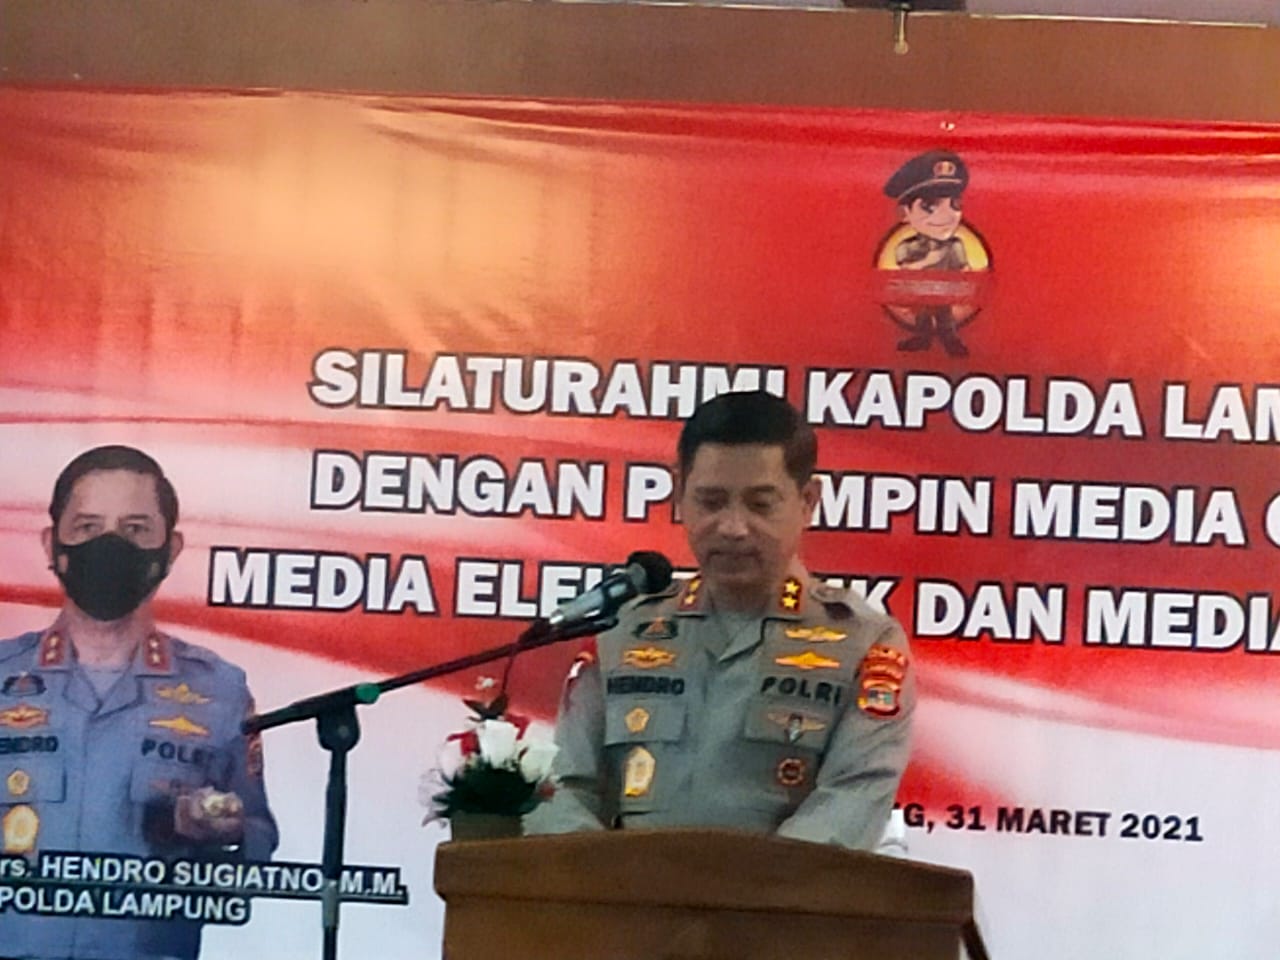 Kapolda Lampung Silaturahmi dengan Para Pimpinan Media